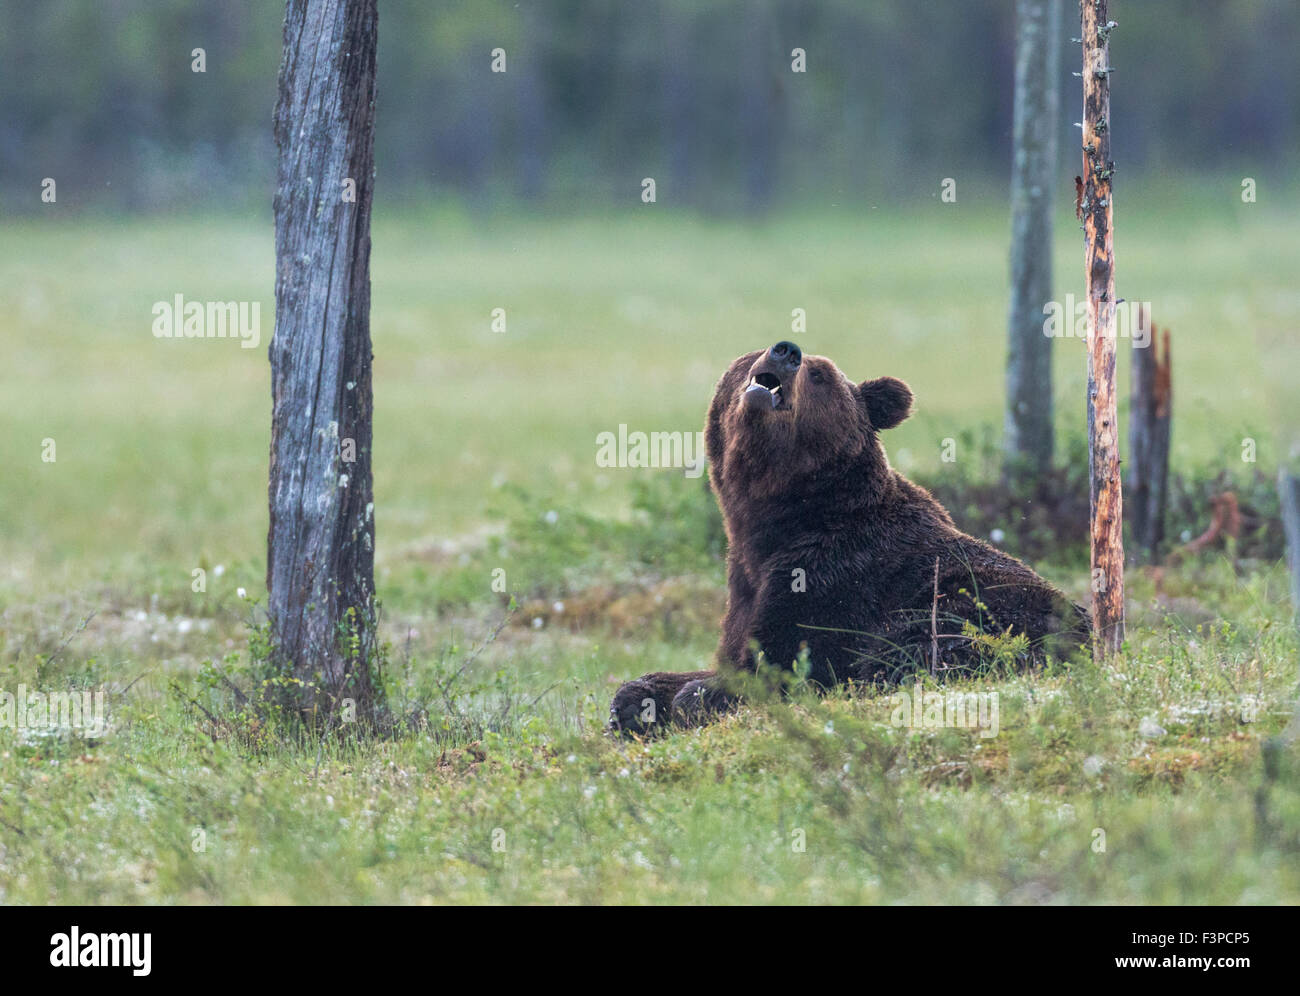 Brauner Bär, Ursus Arctos, liegend auf einem Moos, schnüffeln in der Luft und Blick in die Kamera, Kuhmo, Finnland Stockfoto